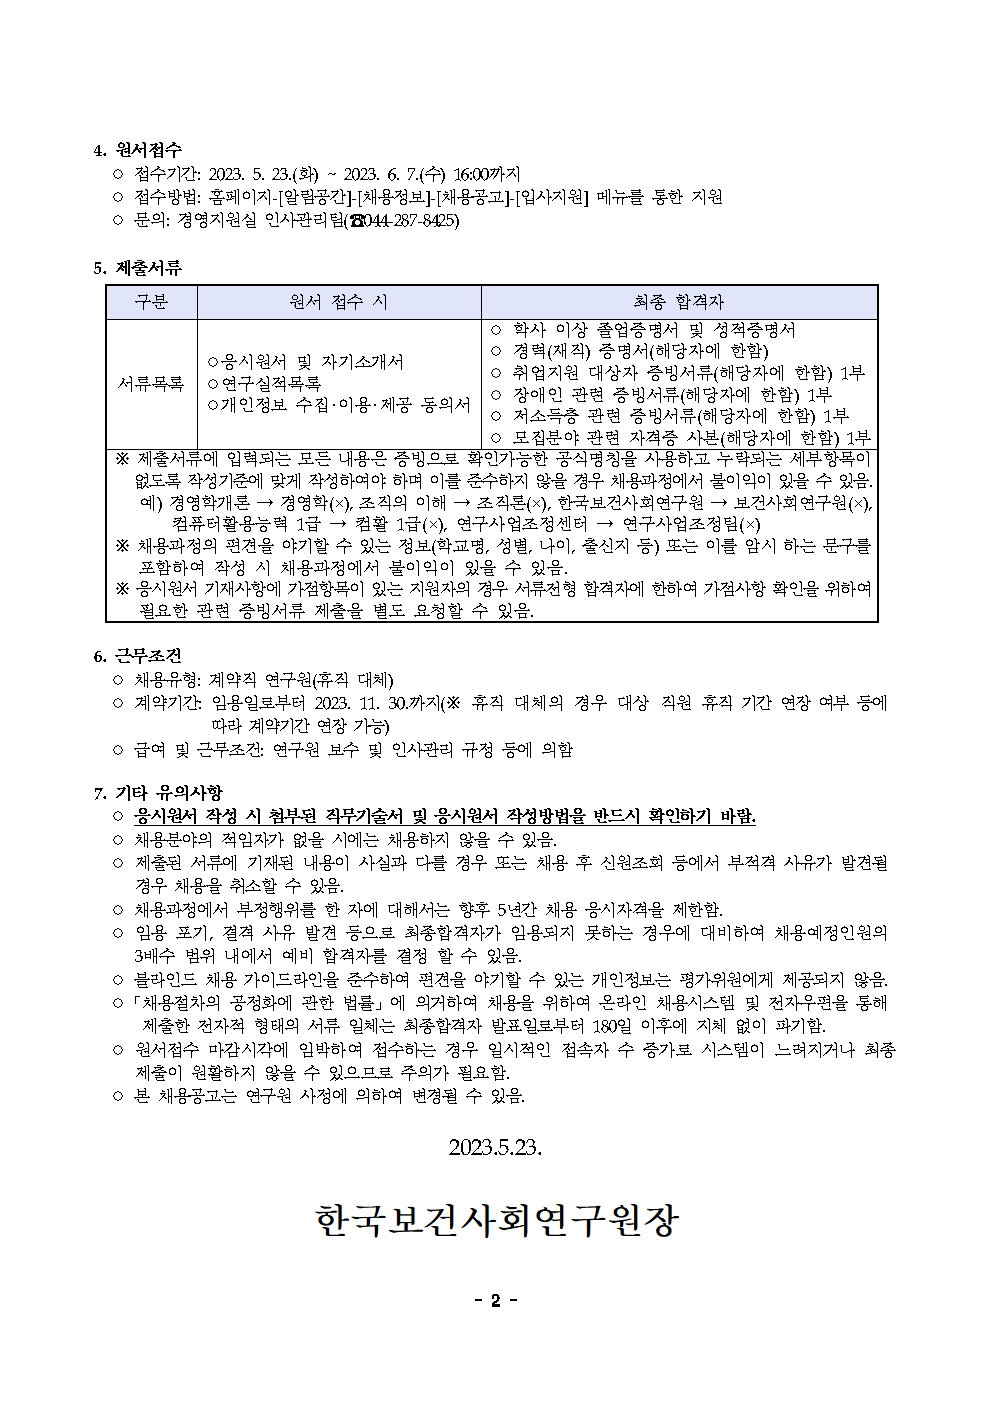 (2/2) 한국보건사회연구원 계약직 연구원 채용 공고 - 자세한 내용은 하단 참조